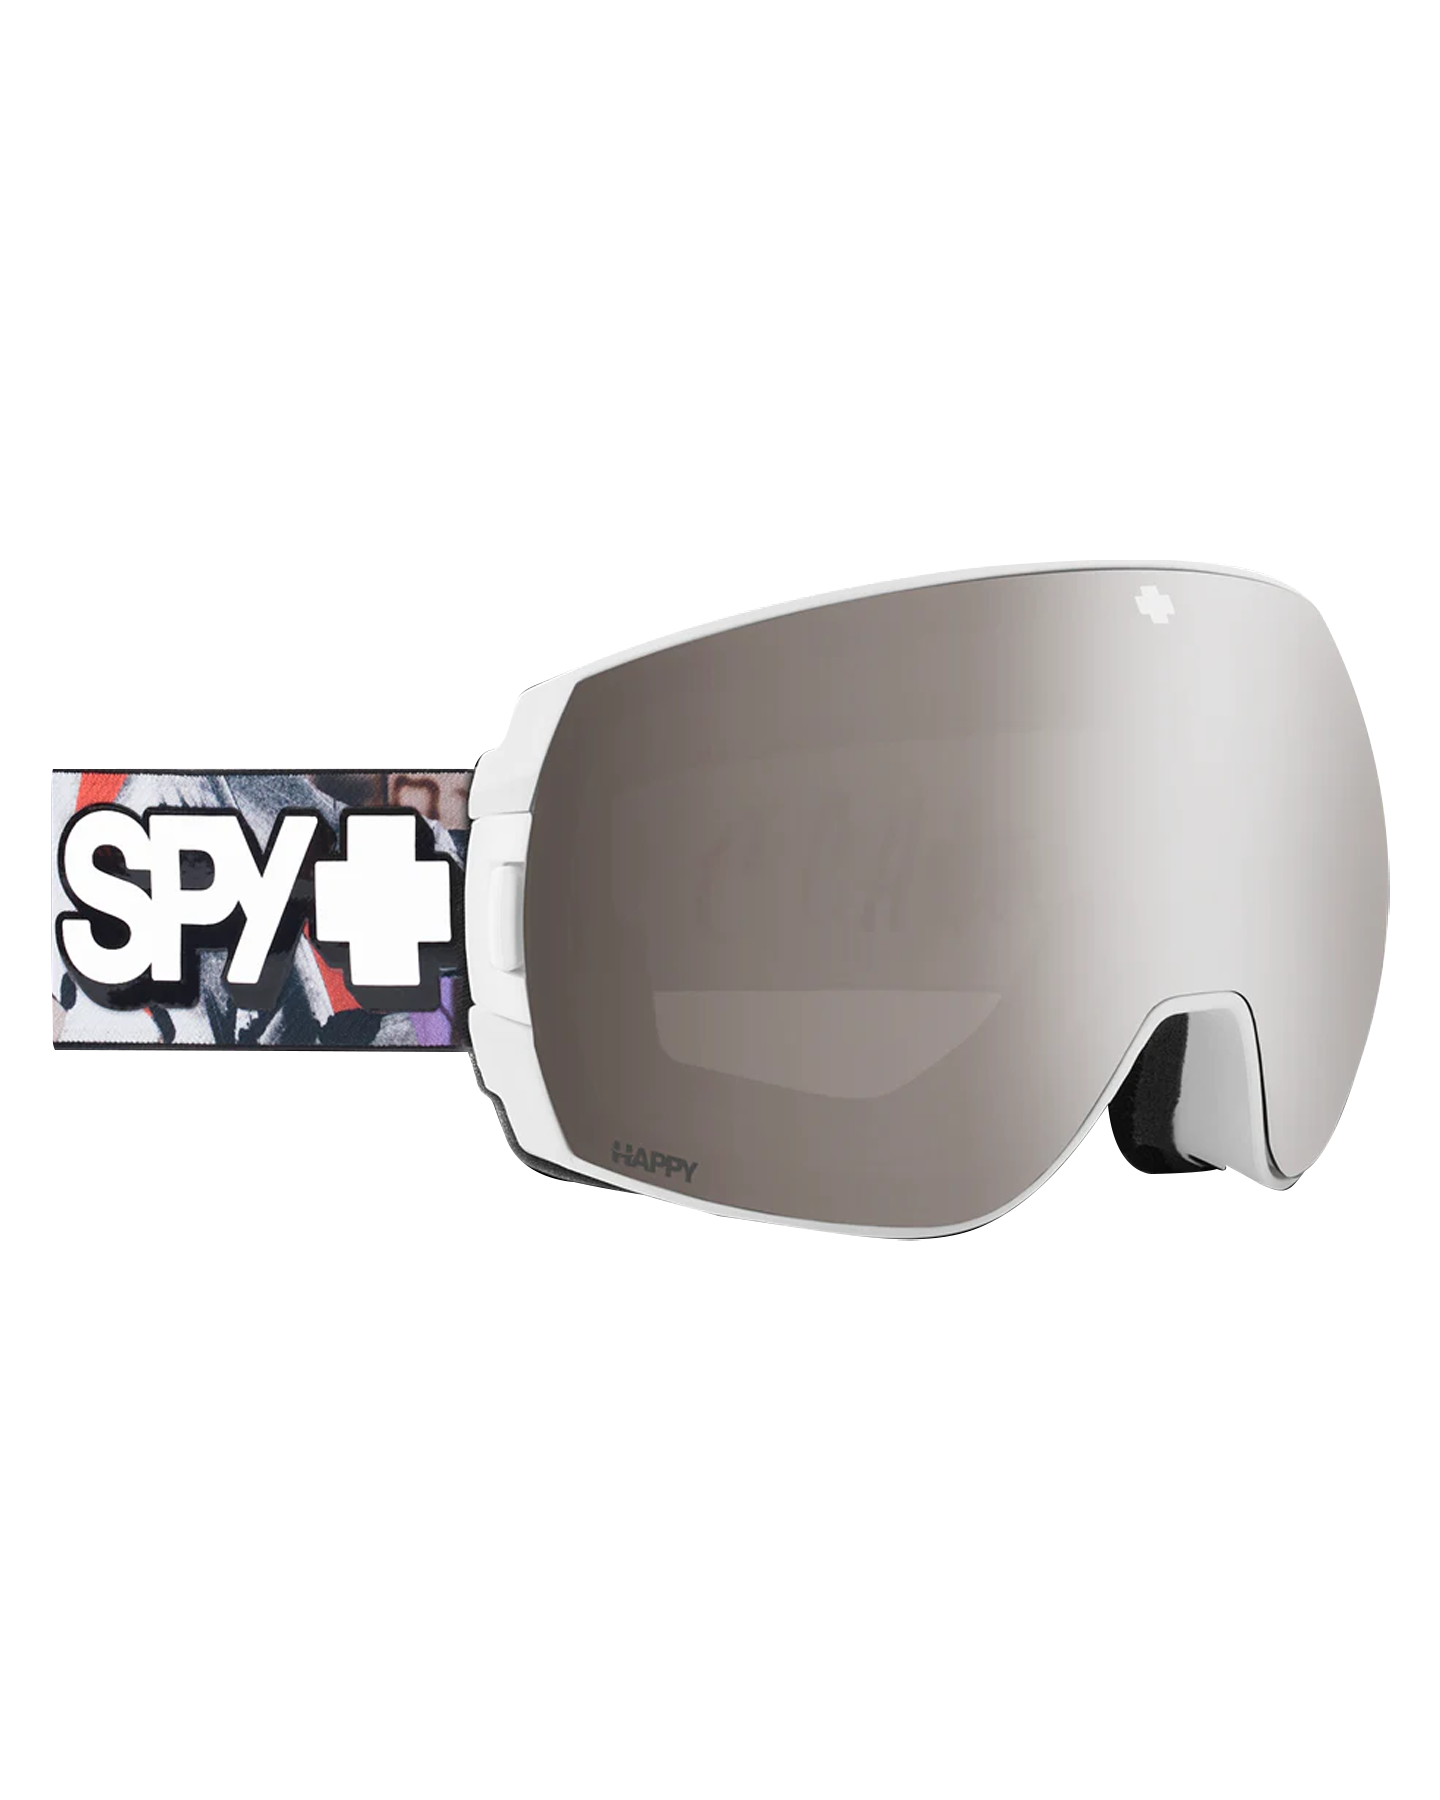 Spy Legacy SE Snow Goggles Men's Snow Goggles - SnowSkiersWarehouse